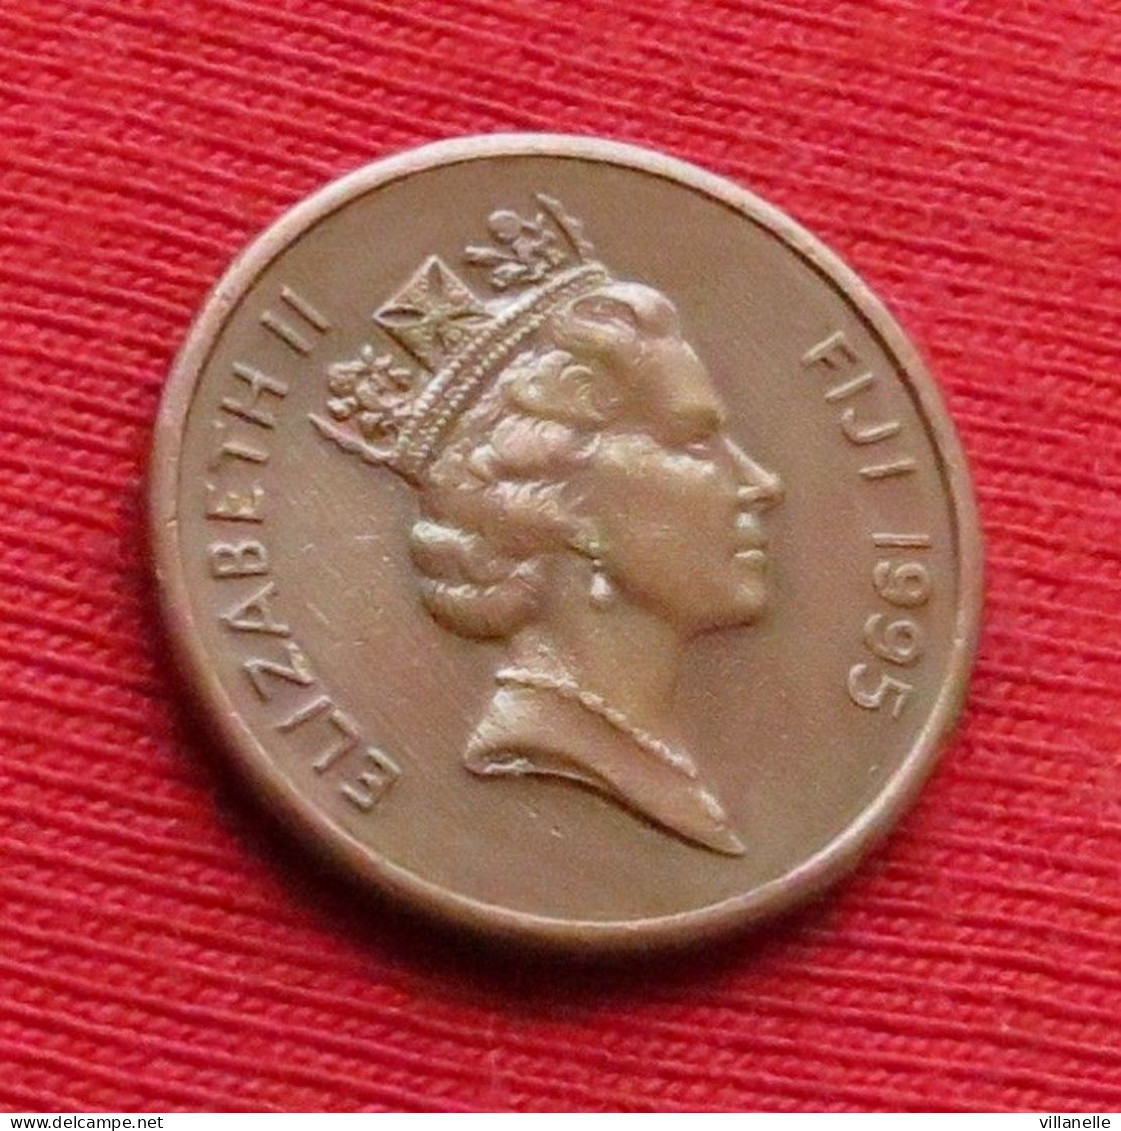 Fiji 1 Cent 1995 KM# 49a *V1T - Fiji